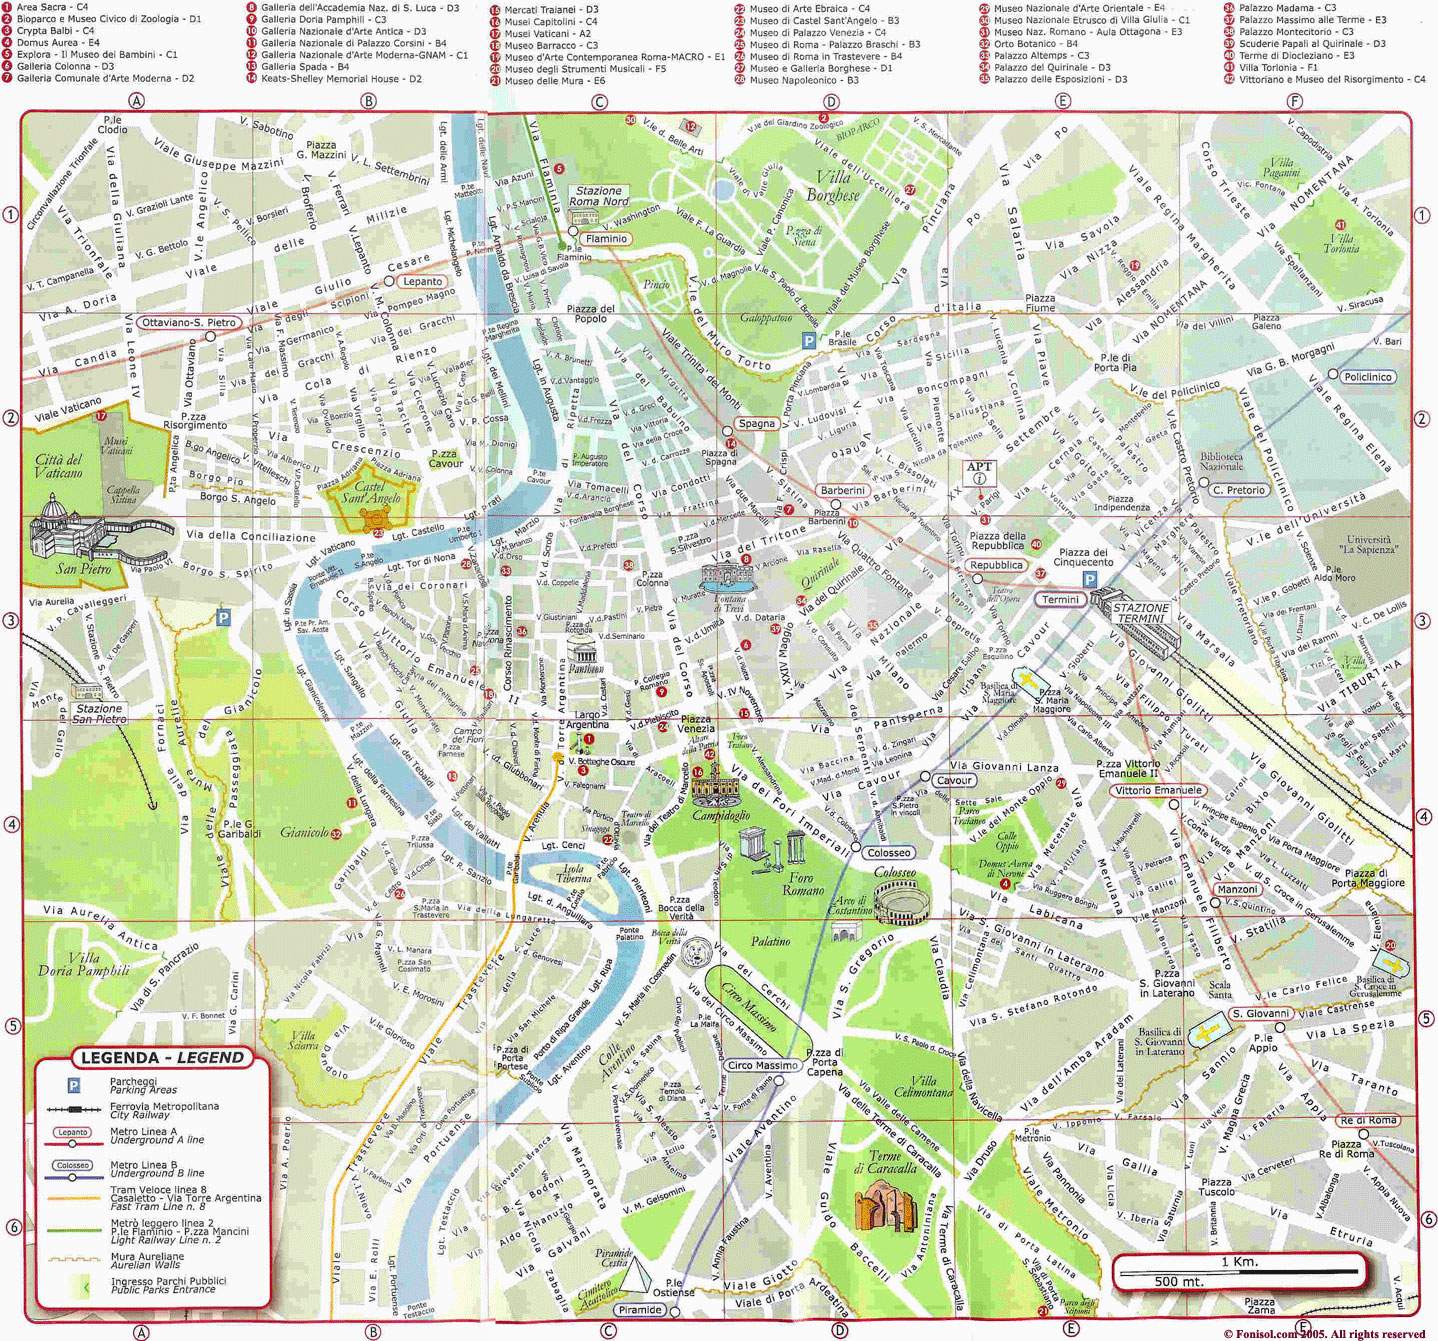 Stadtplan von Rom | Detaillierte gedruckte Karten von Rom, Italien der